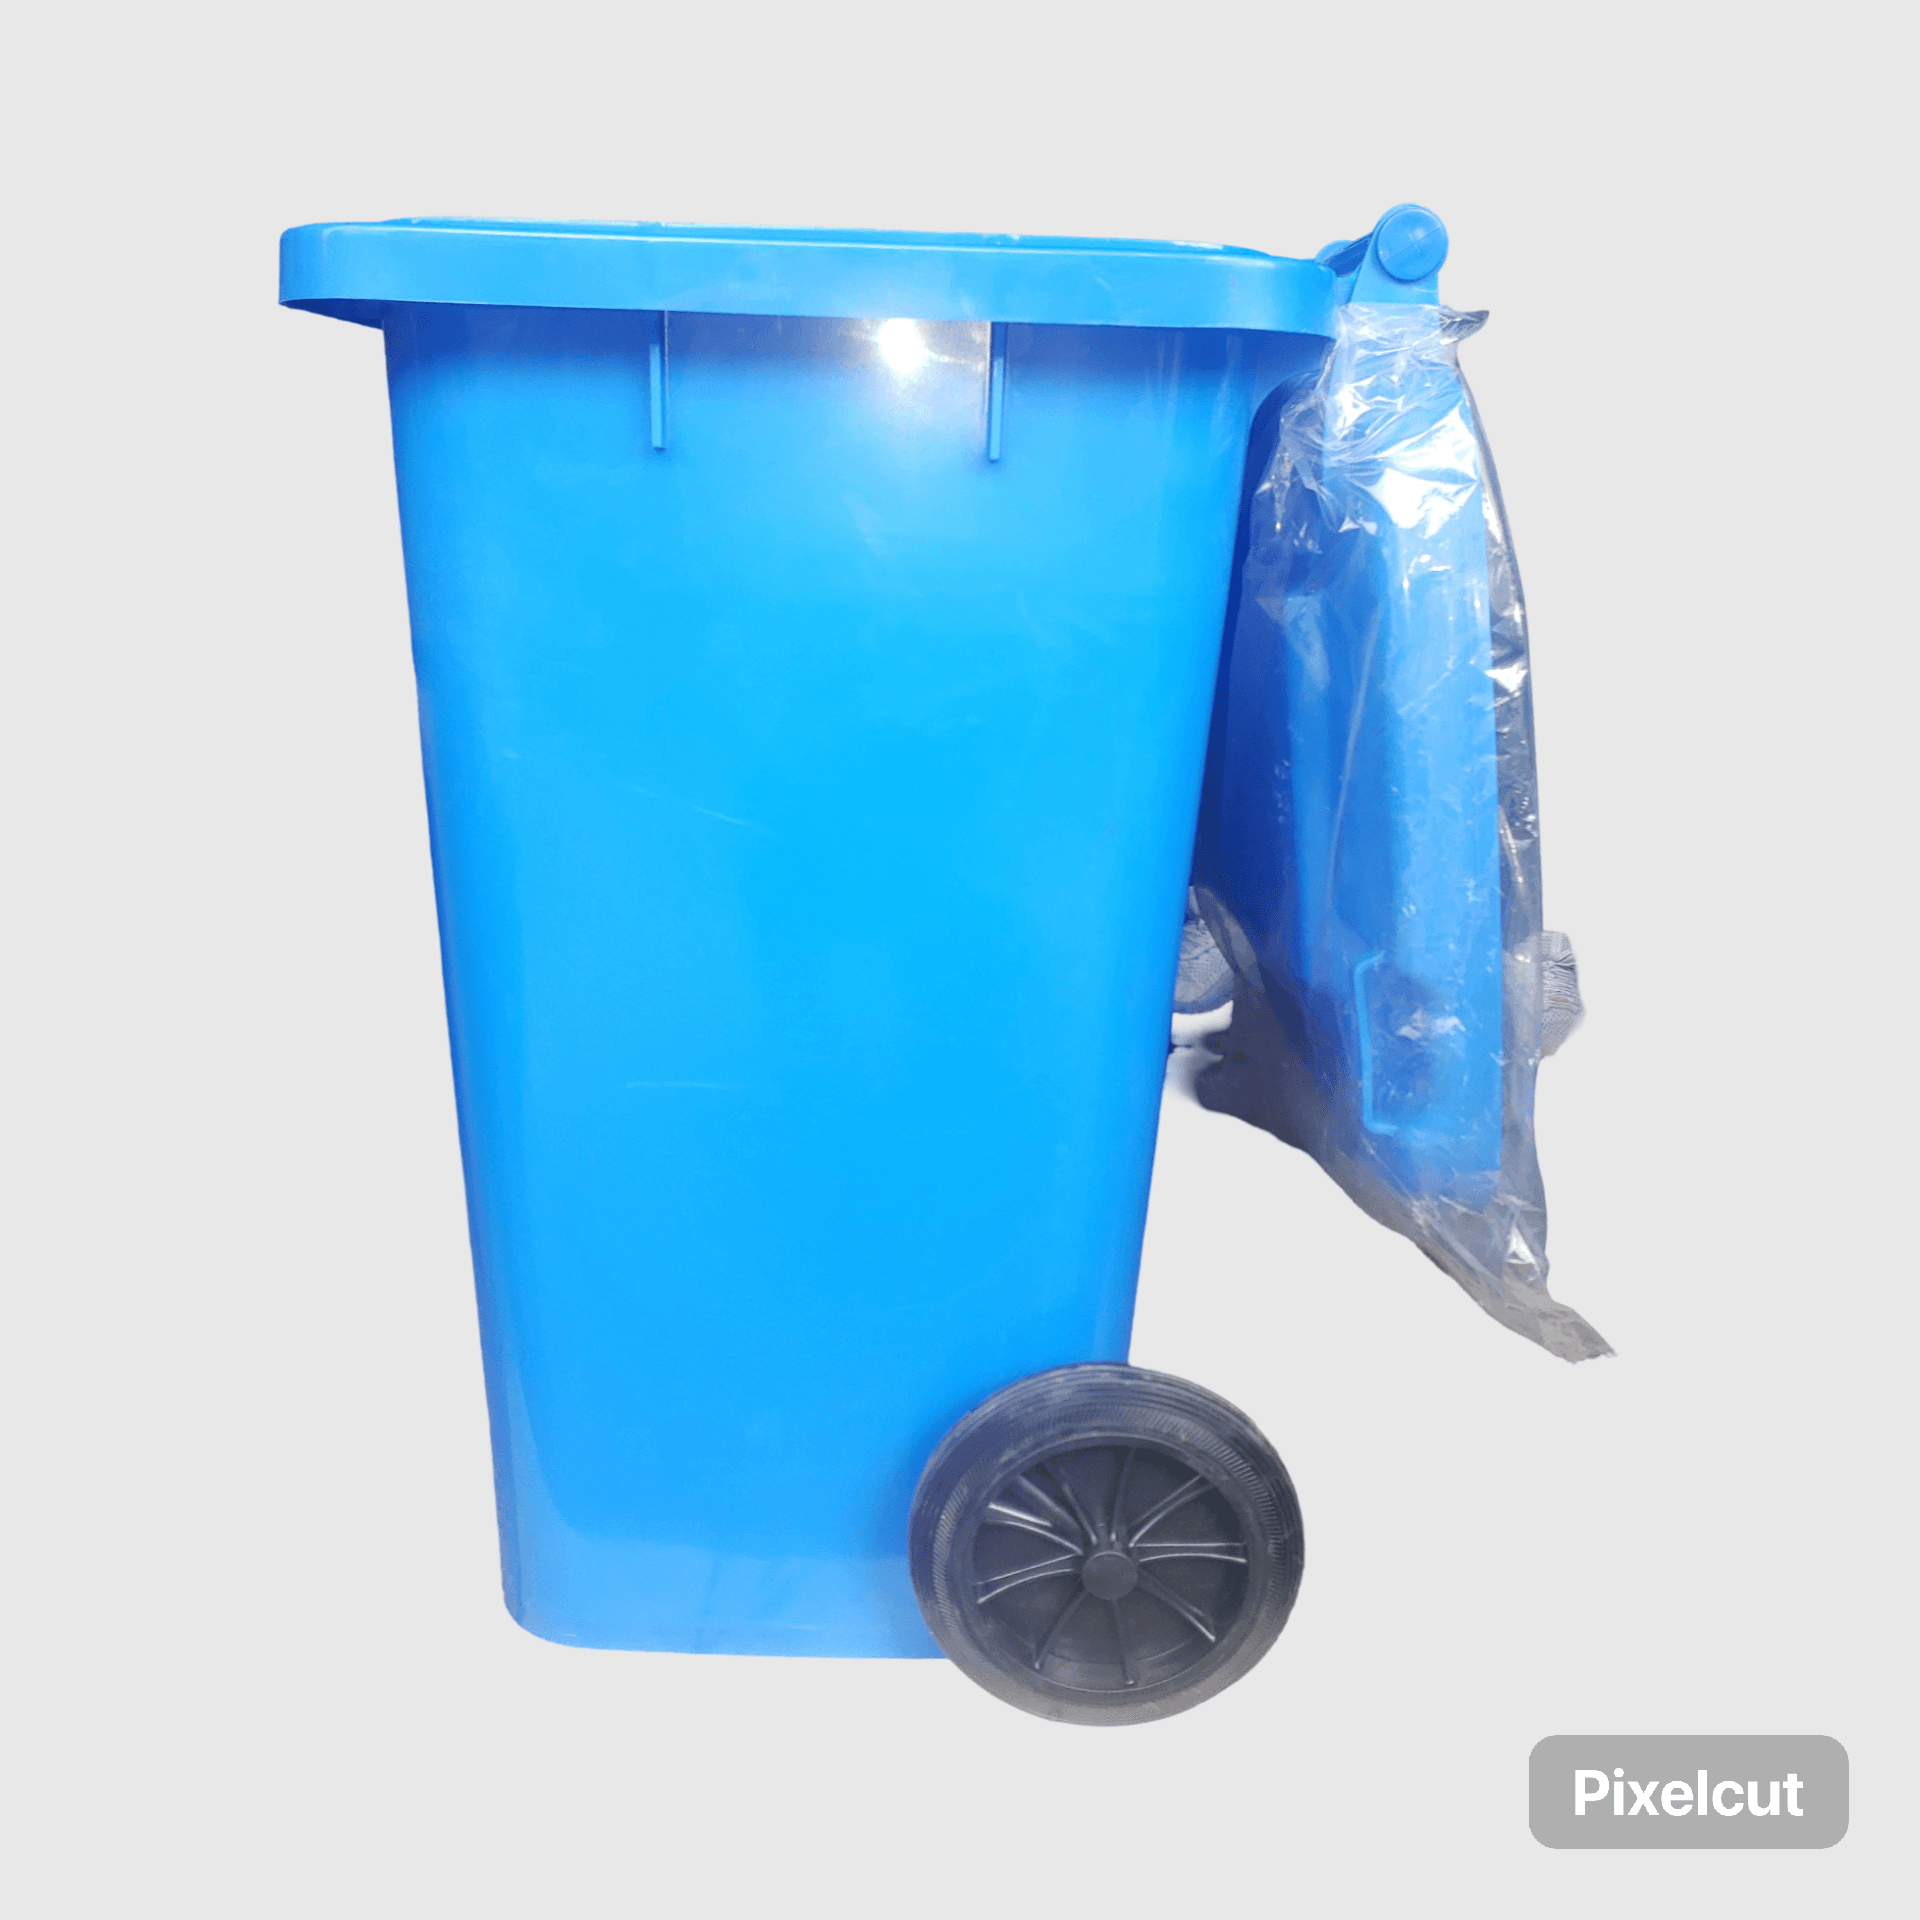 80 ሊትር ባለ ጎማ የቆሻሻ መጣያ / 80 Liter Rolling Trash Can